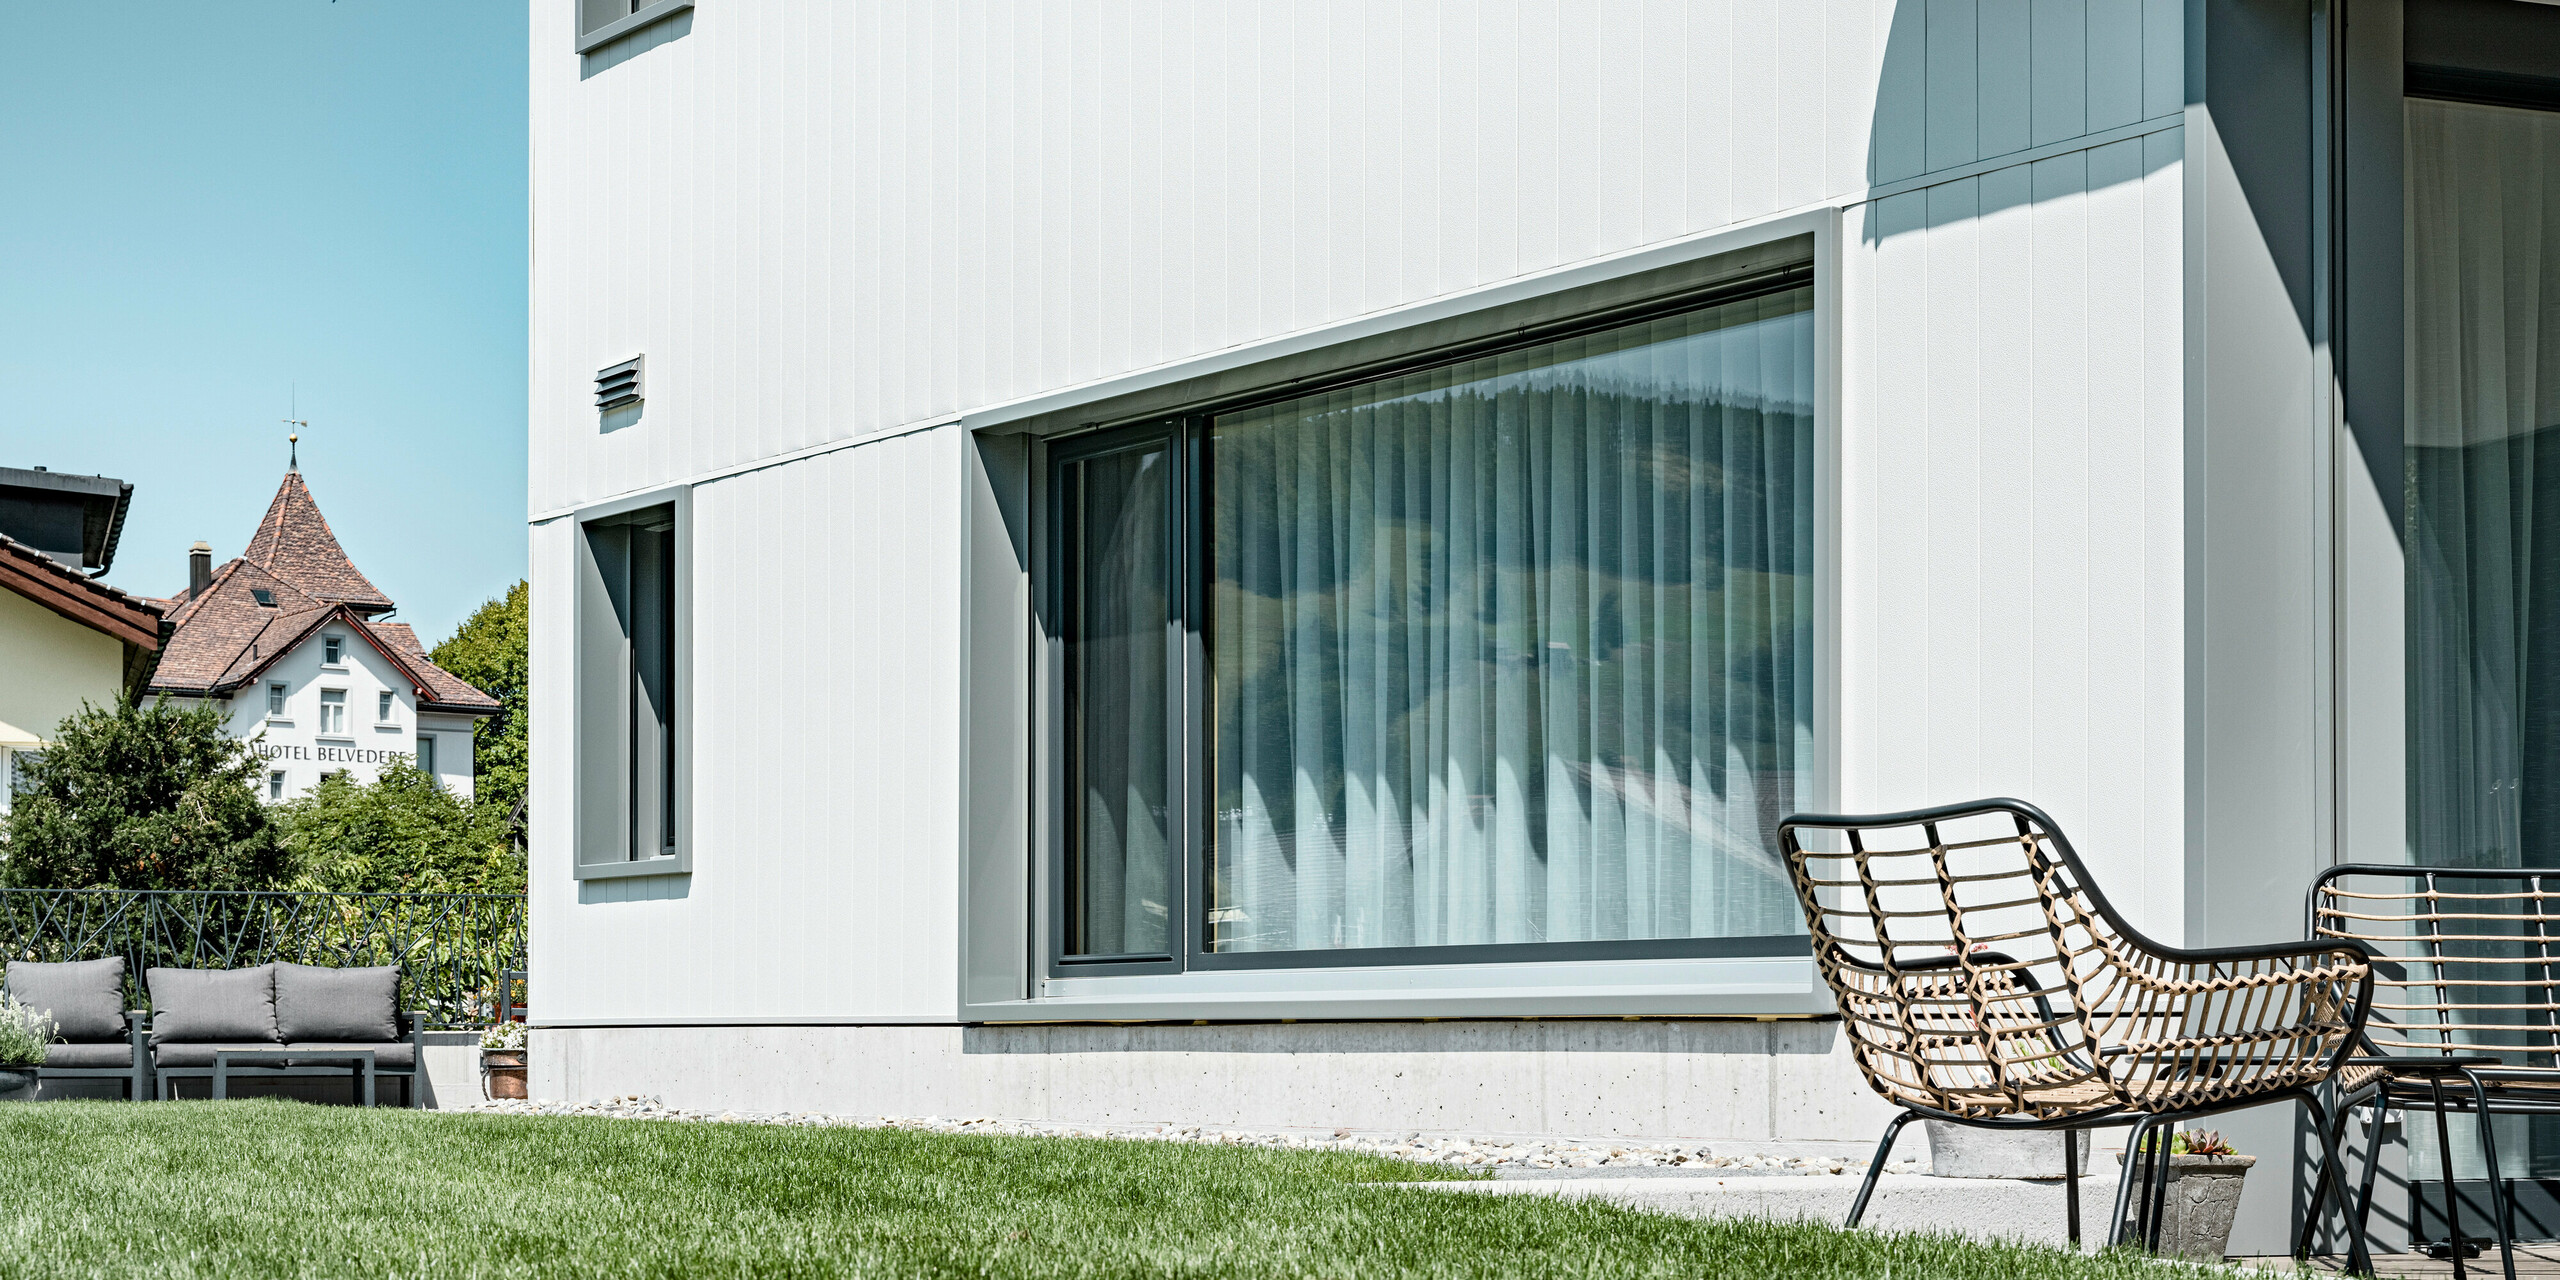 Harmonische Verbindung von Funktionalität und Design: Das Mehrfamilienhaus in Weissbad, Schweiz, zeigt seine klare, moderne Linienführung durch die PREFA Aluminiumfassade in P.10 Prefaweiß. Die vertikal montierten PREFA Sidings unterstreichen das schlichte, aber stilvolle Erscheinungsbild des Gebäudes, während die großen Fensterfronten reichlich Tageslicht in die Wohnräume lassen. Die Fassade bildet einen ruhigen Hintergrund für die entspannende Gartensitzecke.